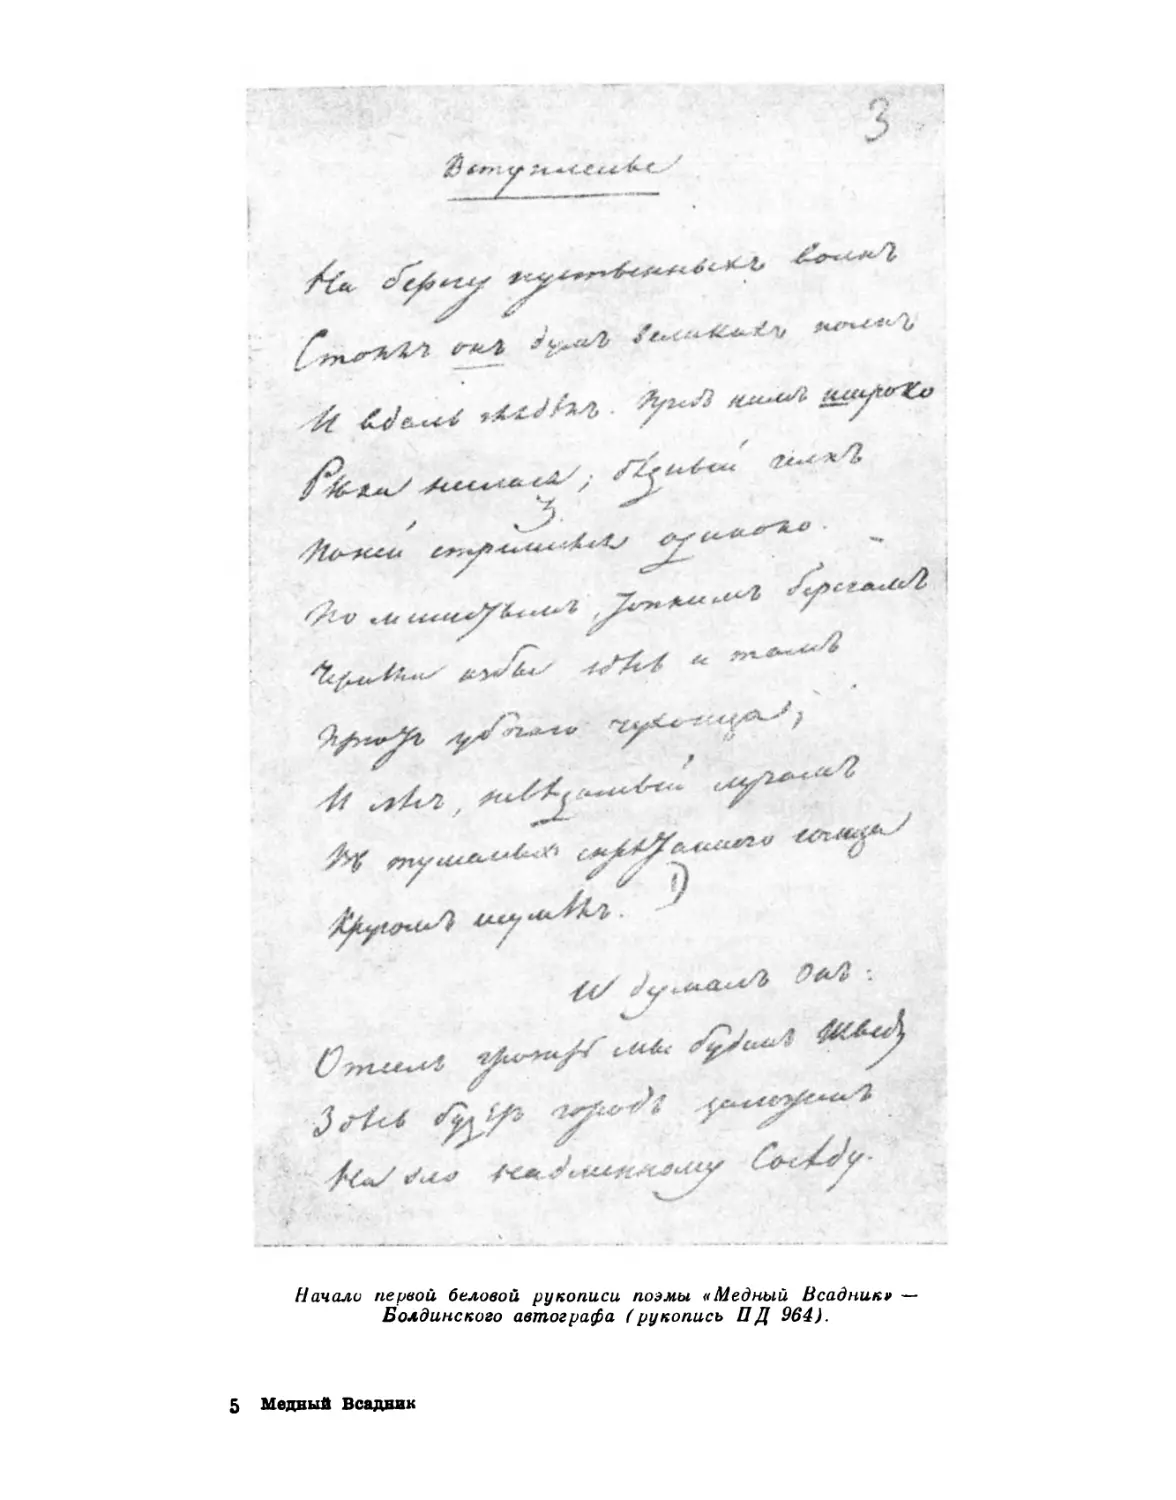 Начало первой беловой рукописи поэмы «Медный Всадник» — Болдинского автографа (рукопись ПД 964